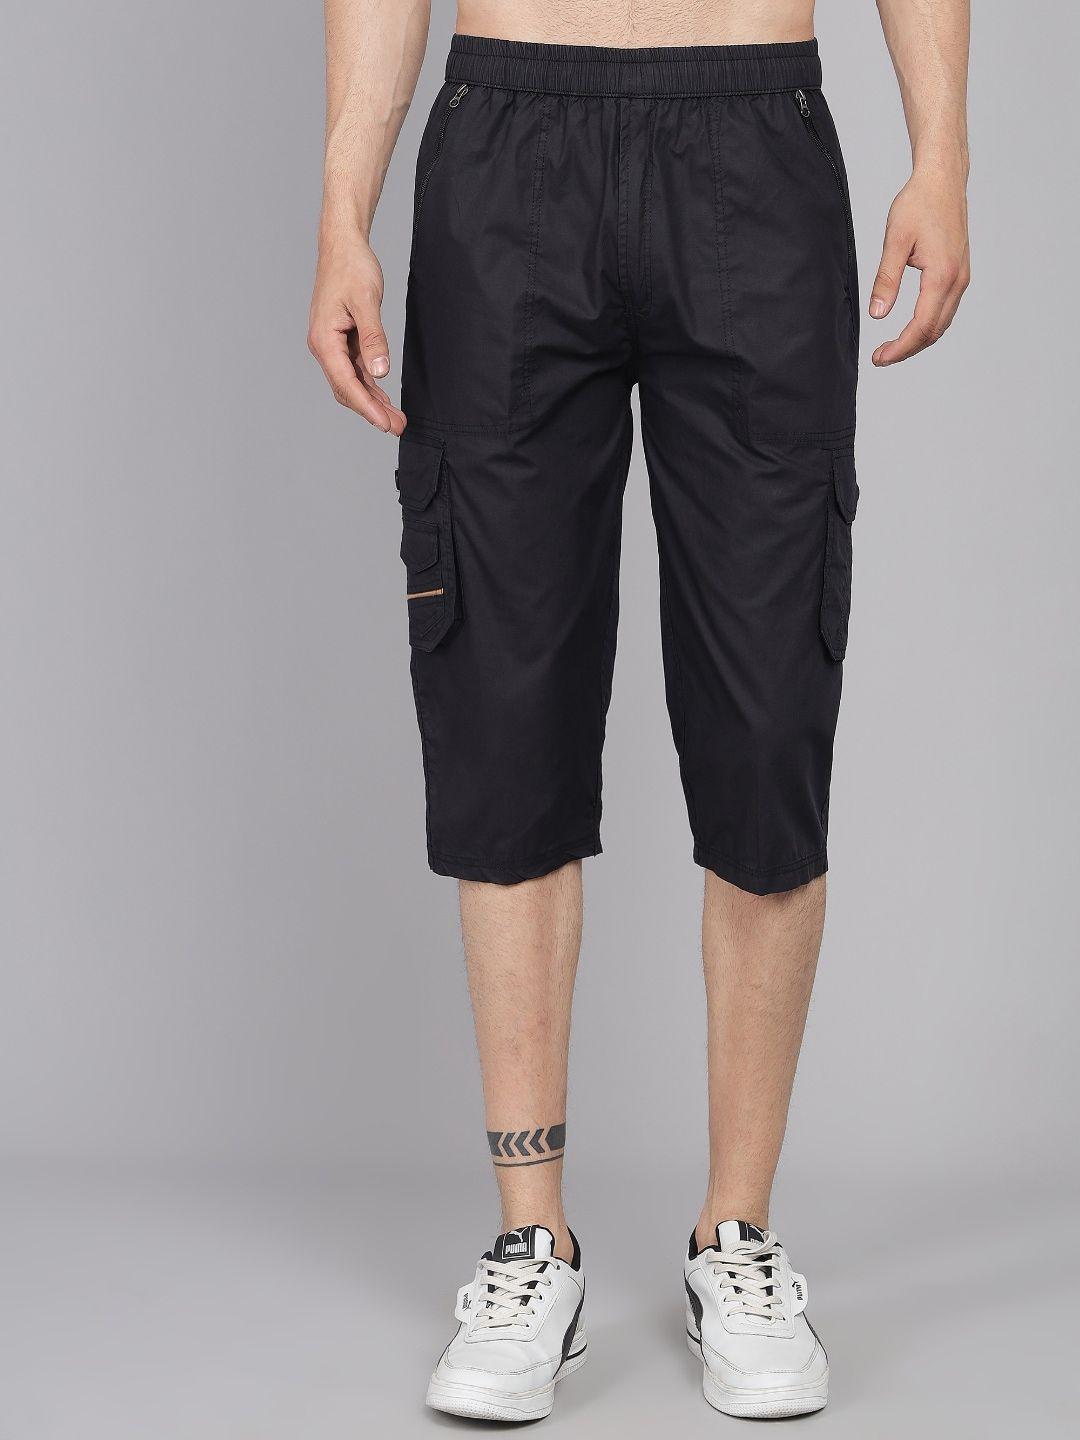 studio-nexx-men-black-loose-fit-cargo-shorts